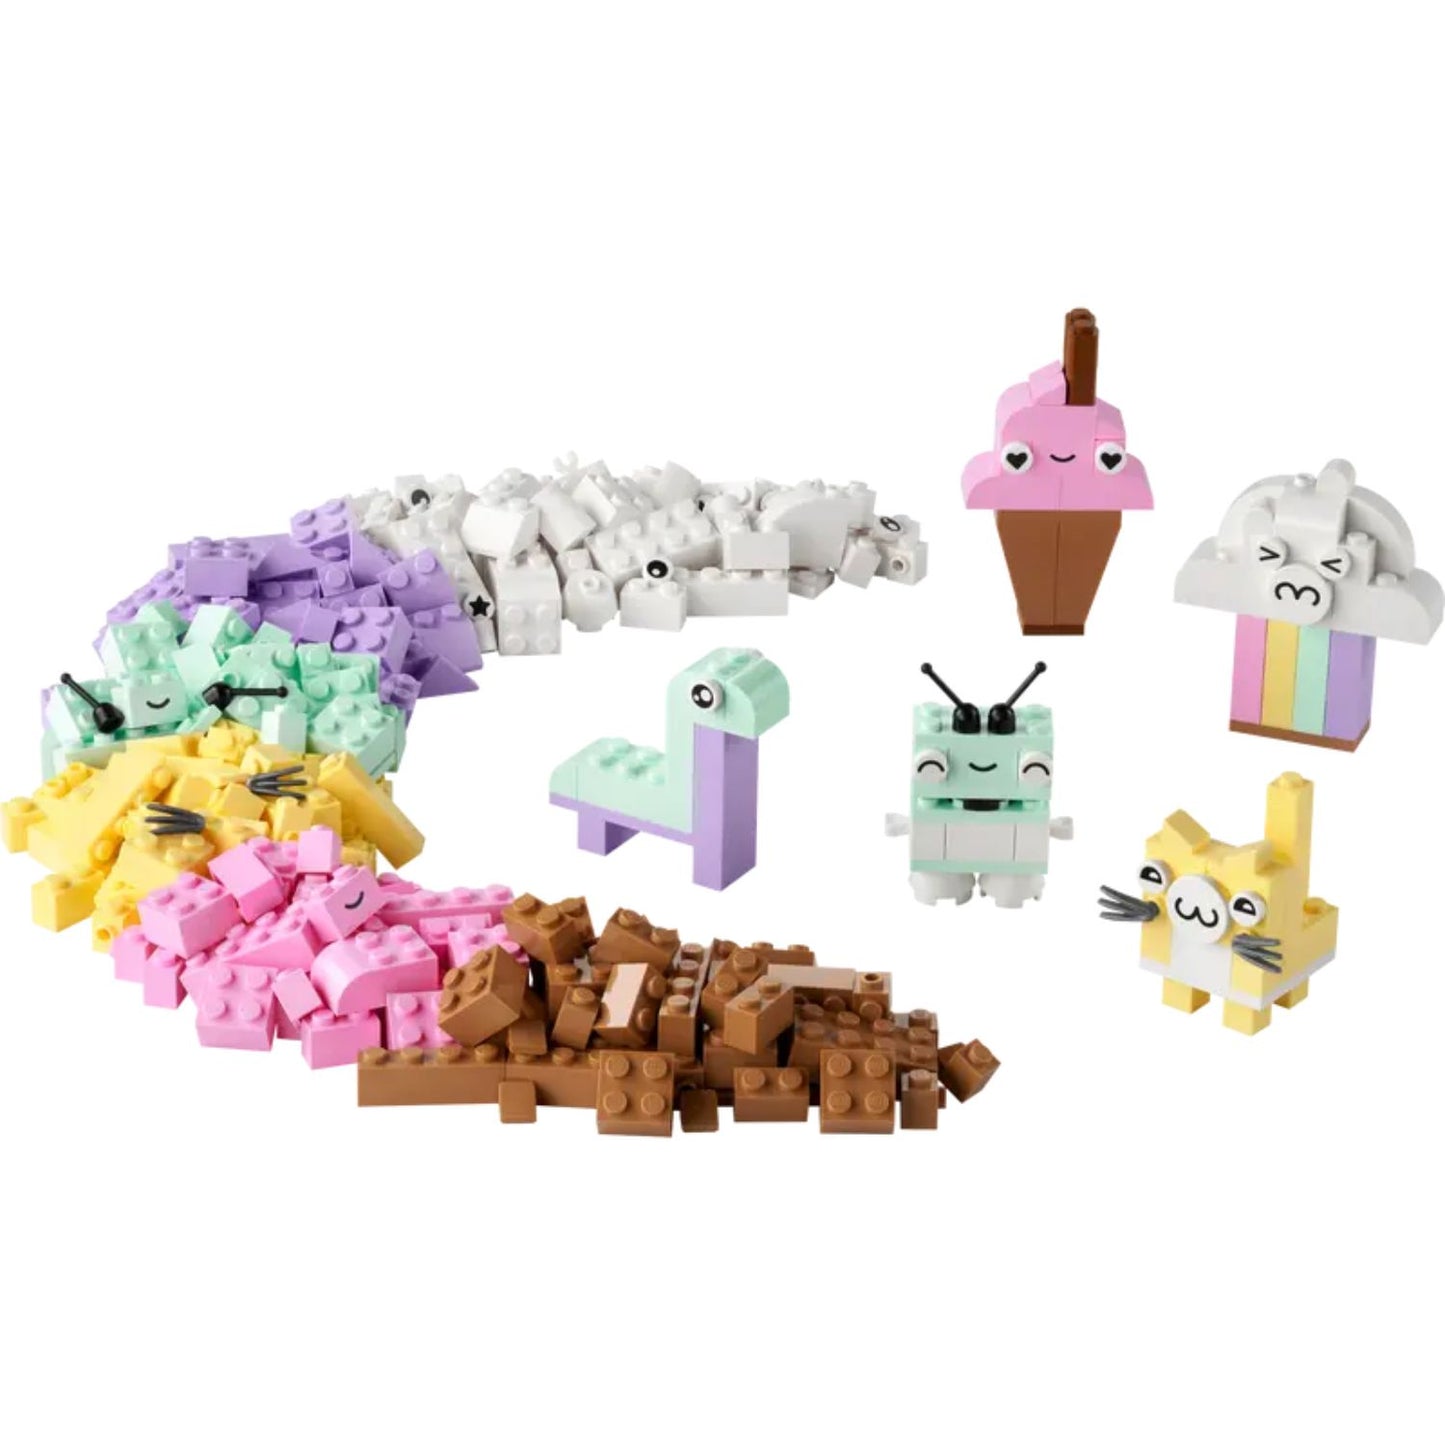 LEGO Classic - Divertimento creativo Pastelli 11028